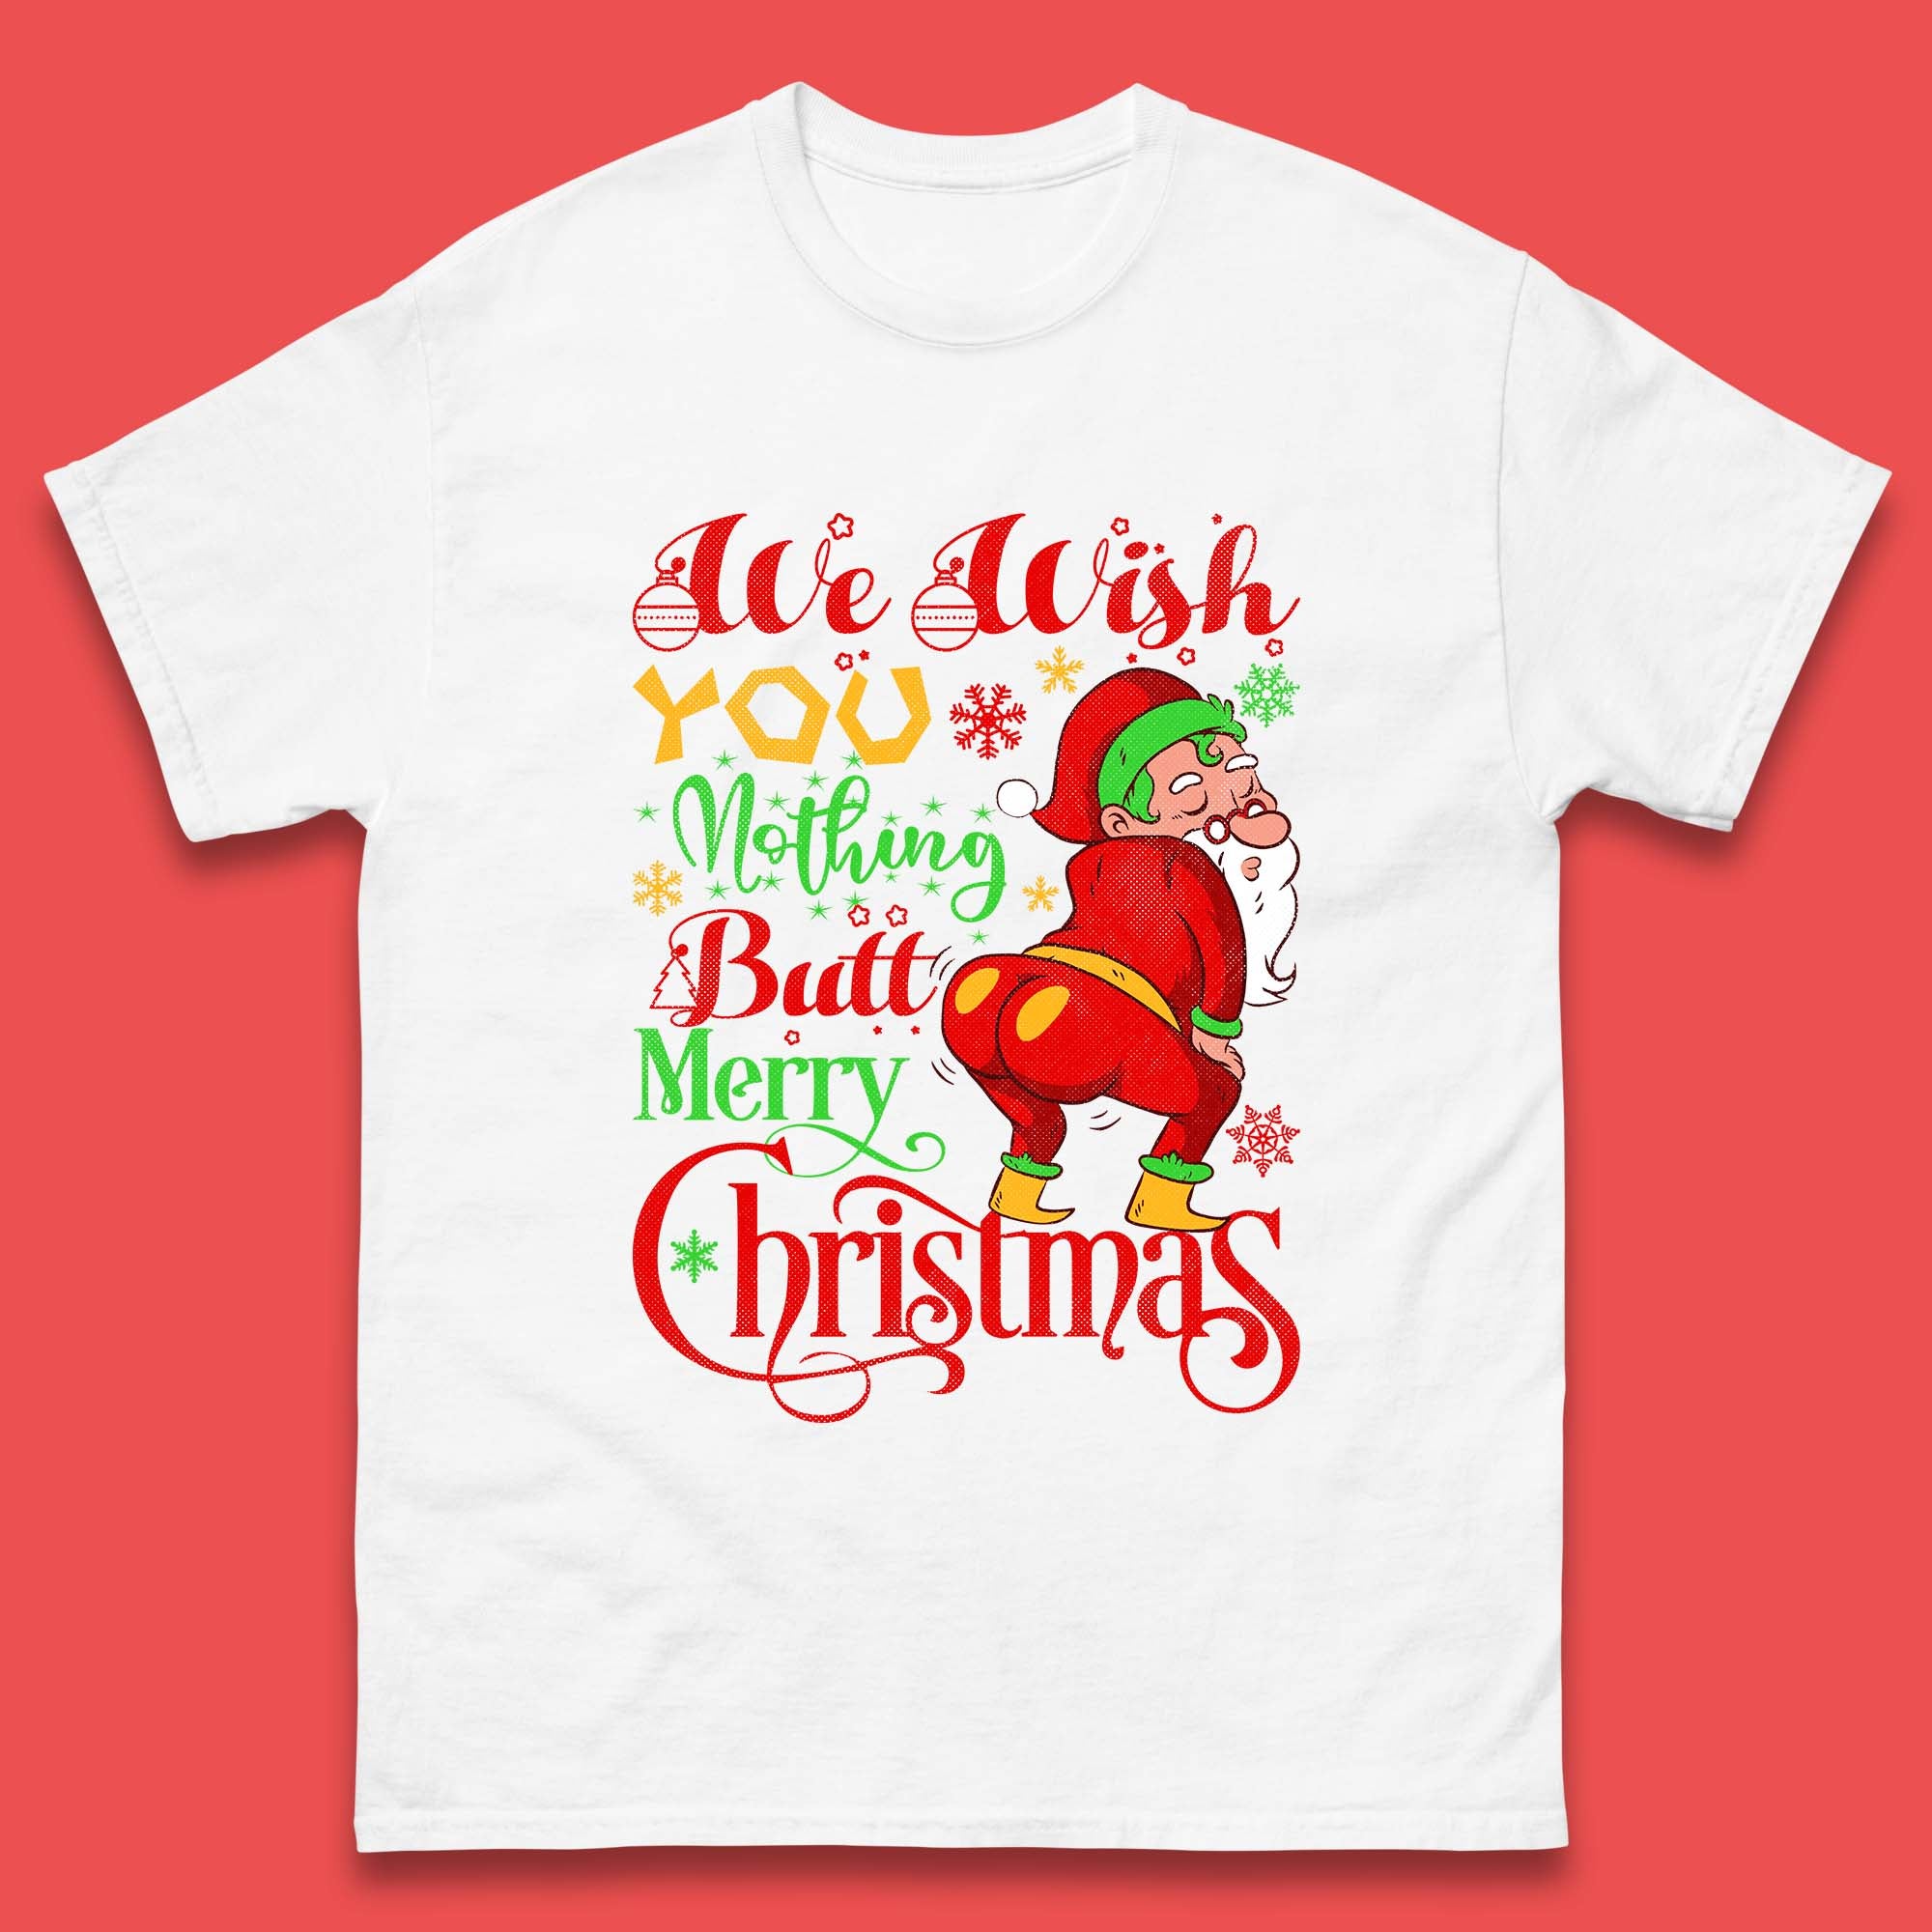 Funny Rude Christmas T-Shirt